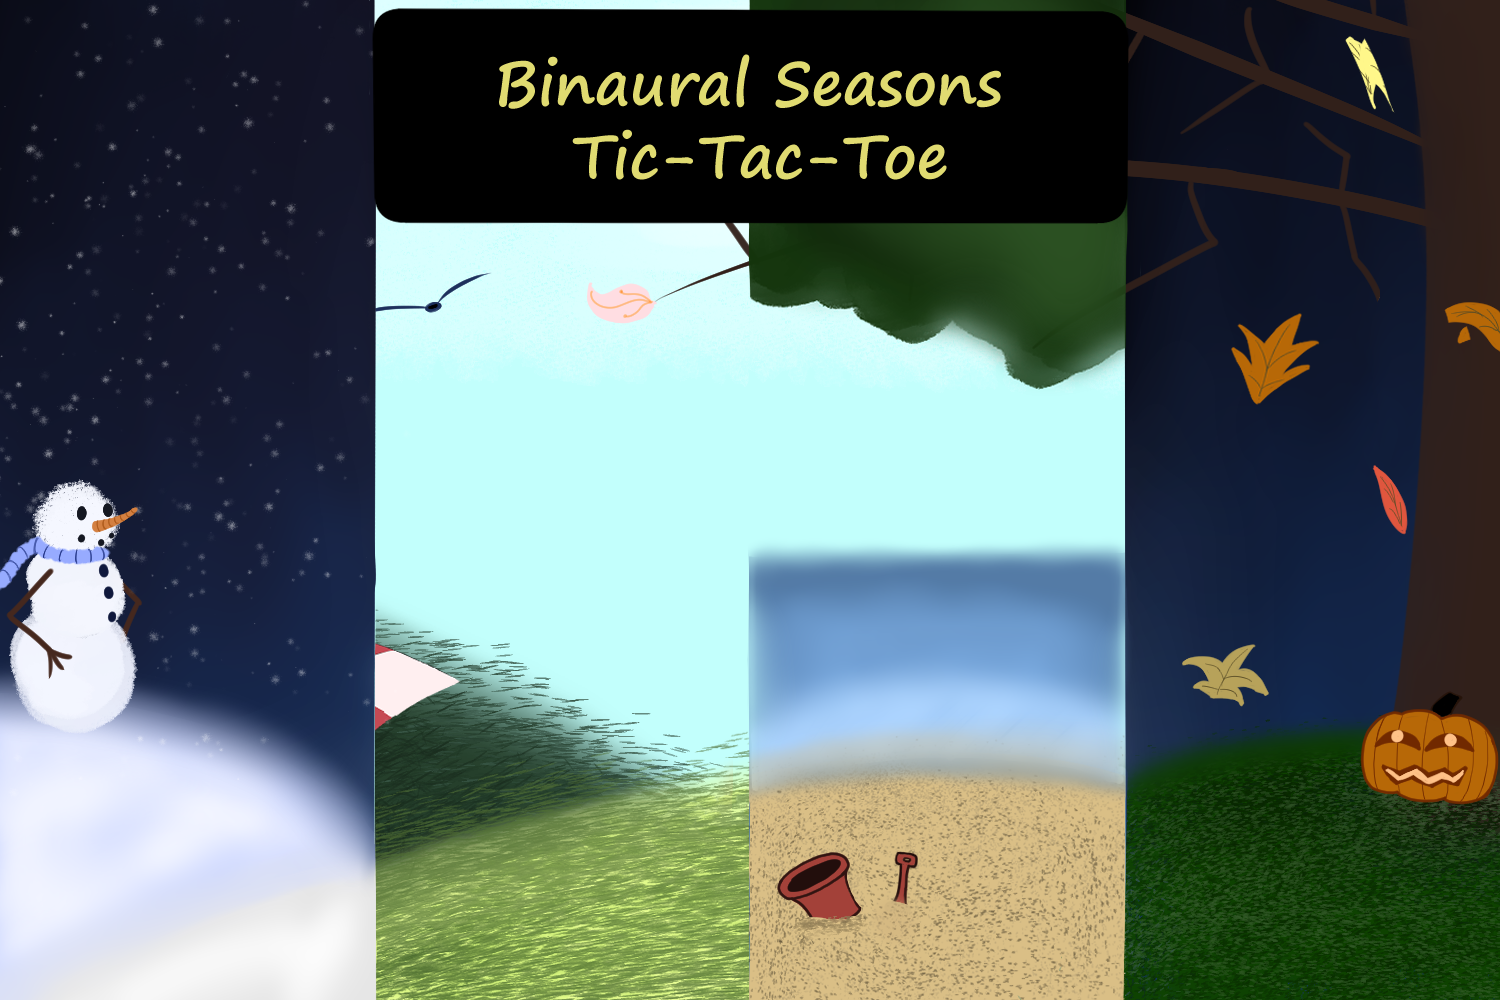 Binaural Seasons Tic-Tac-Toe Demo2022